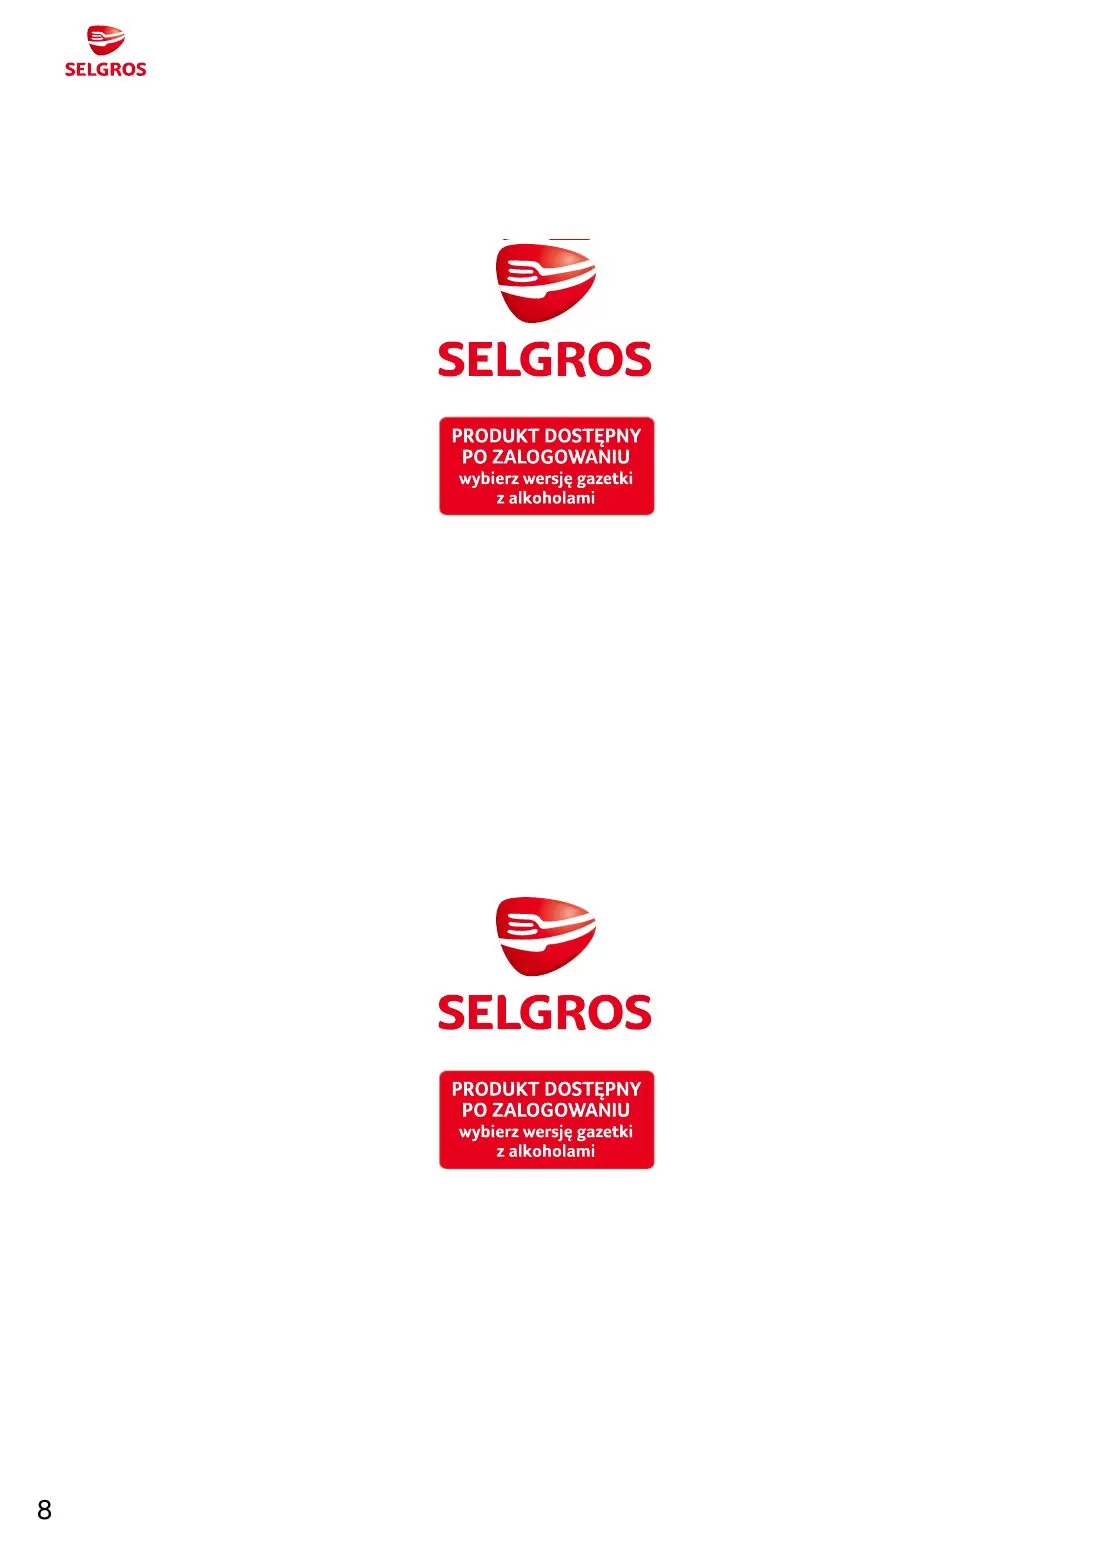 Gazetka promocyjna sklepu Selgros - Katalog ogrodzeń dekoracyjnych - data obowiązywania: od 16.11 do 29.11